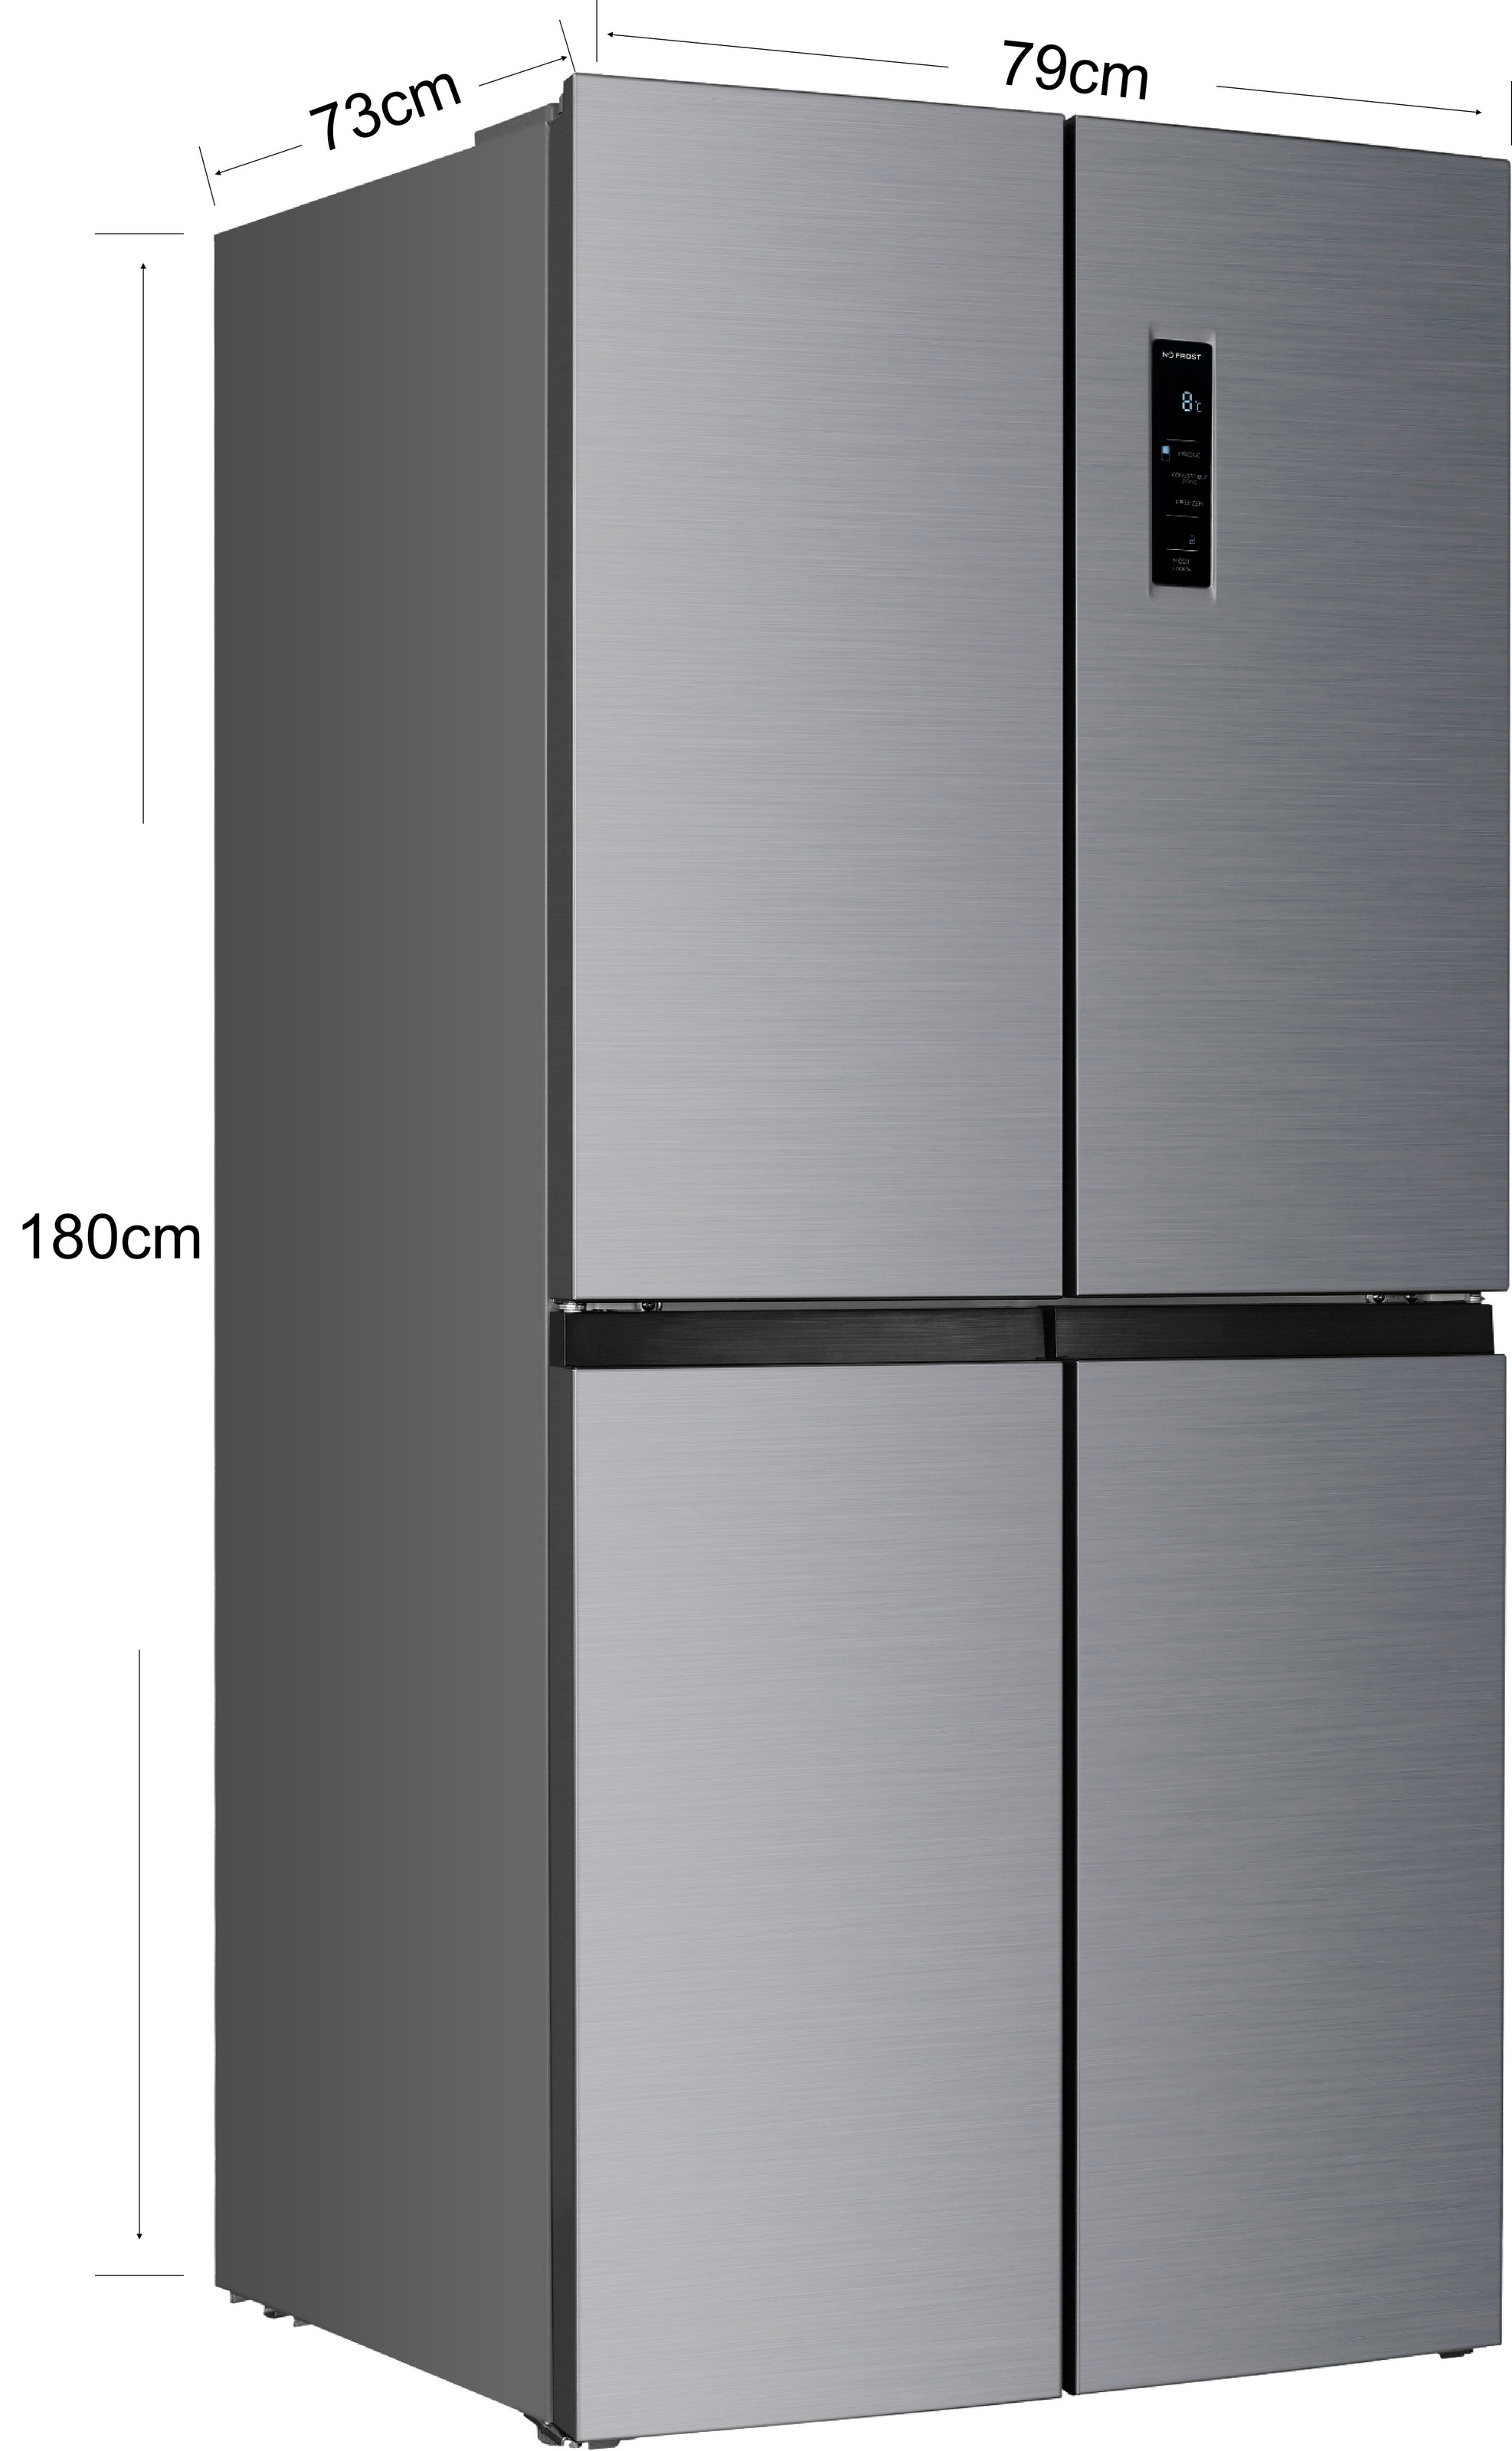 Hanseatic Multi Door, HCDB18080DI, 180,0 cm hoch, 79,0 cm breit jetzt im  OTTO Online Shop | Side-by-Side Kühlschränke